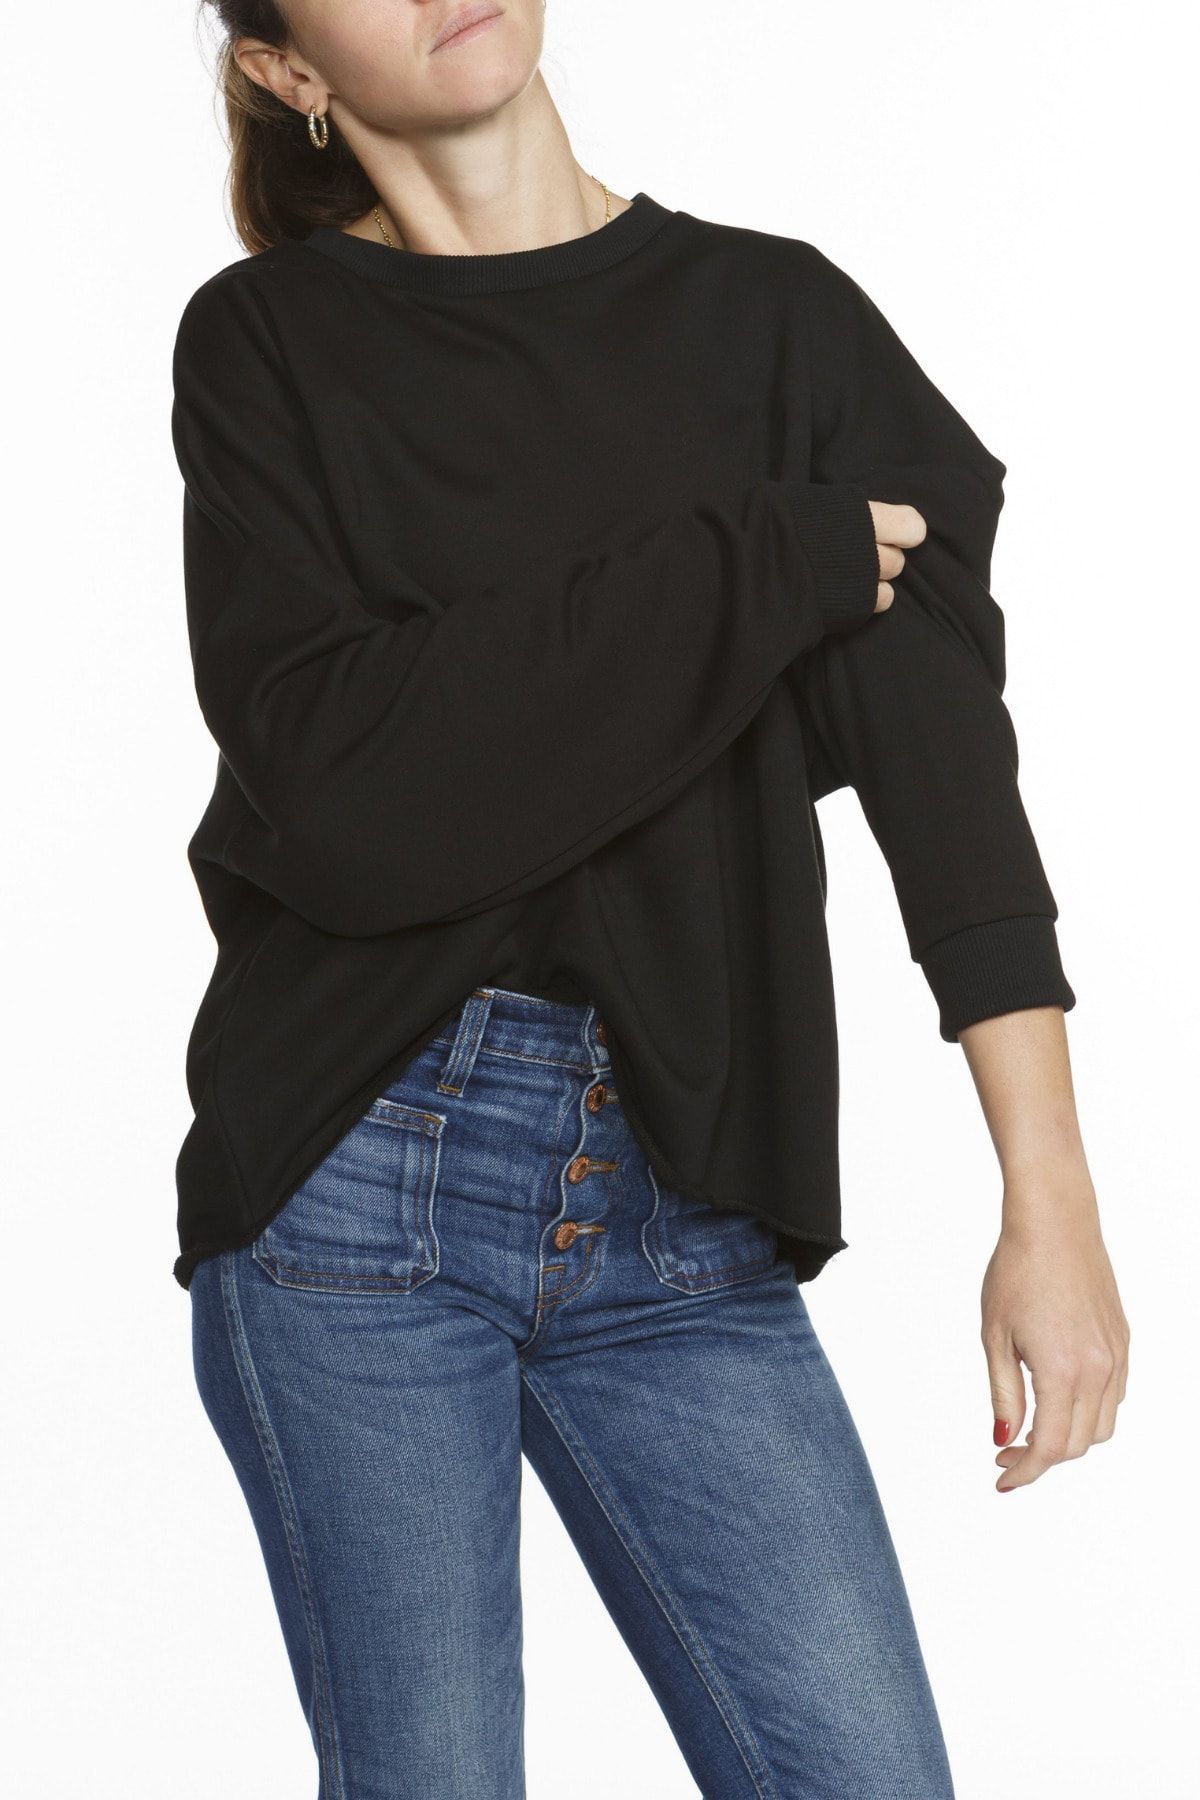 Basic Co Skye Oversized Siyah Sweatshirt